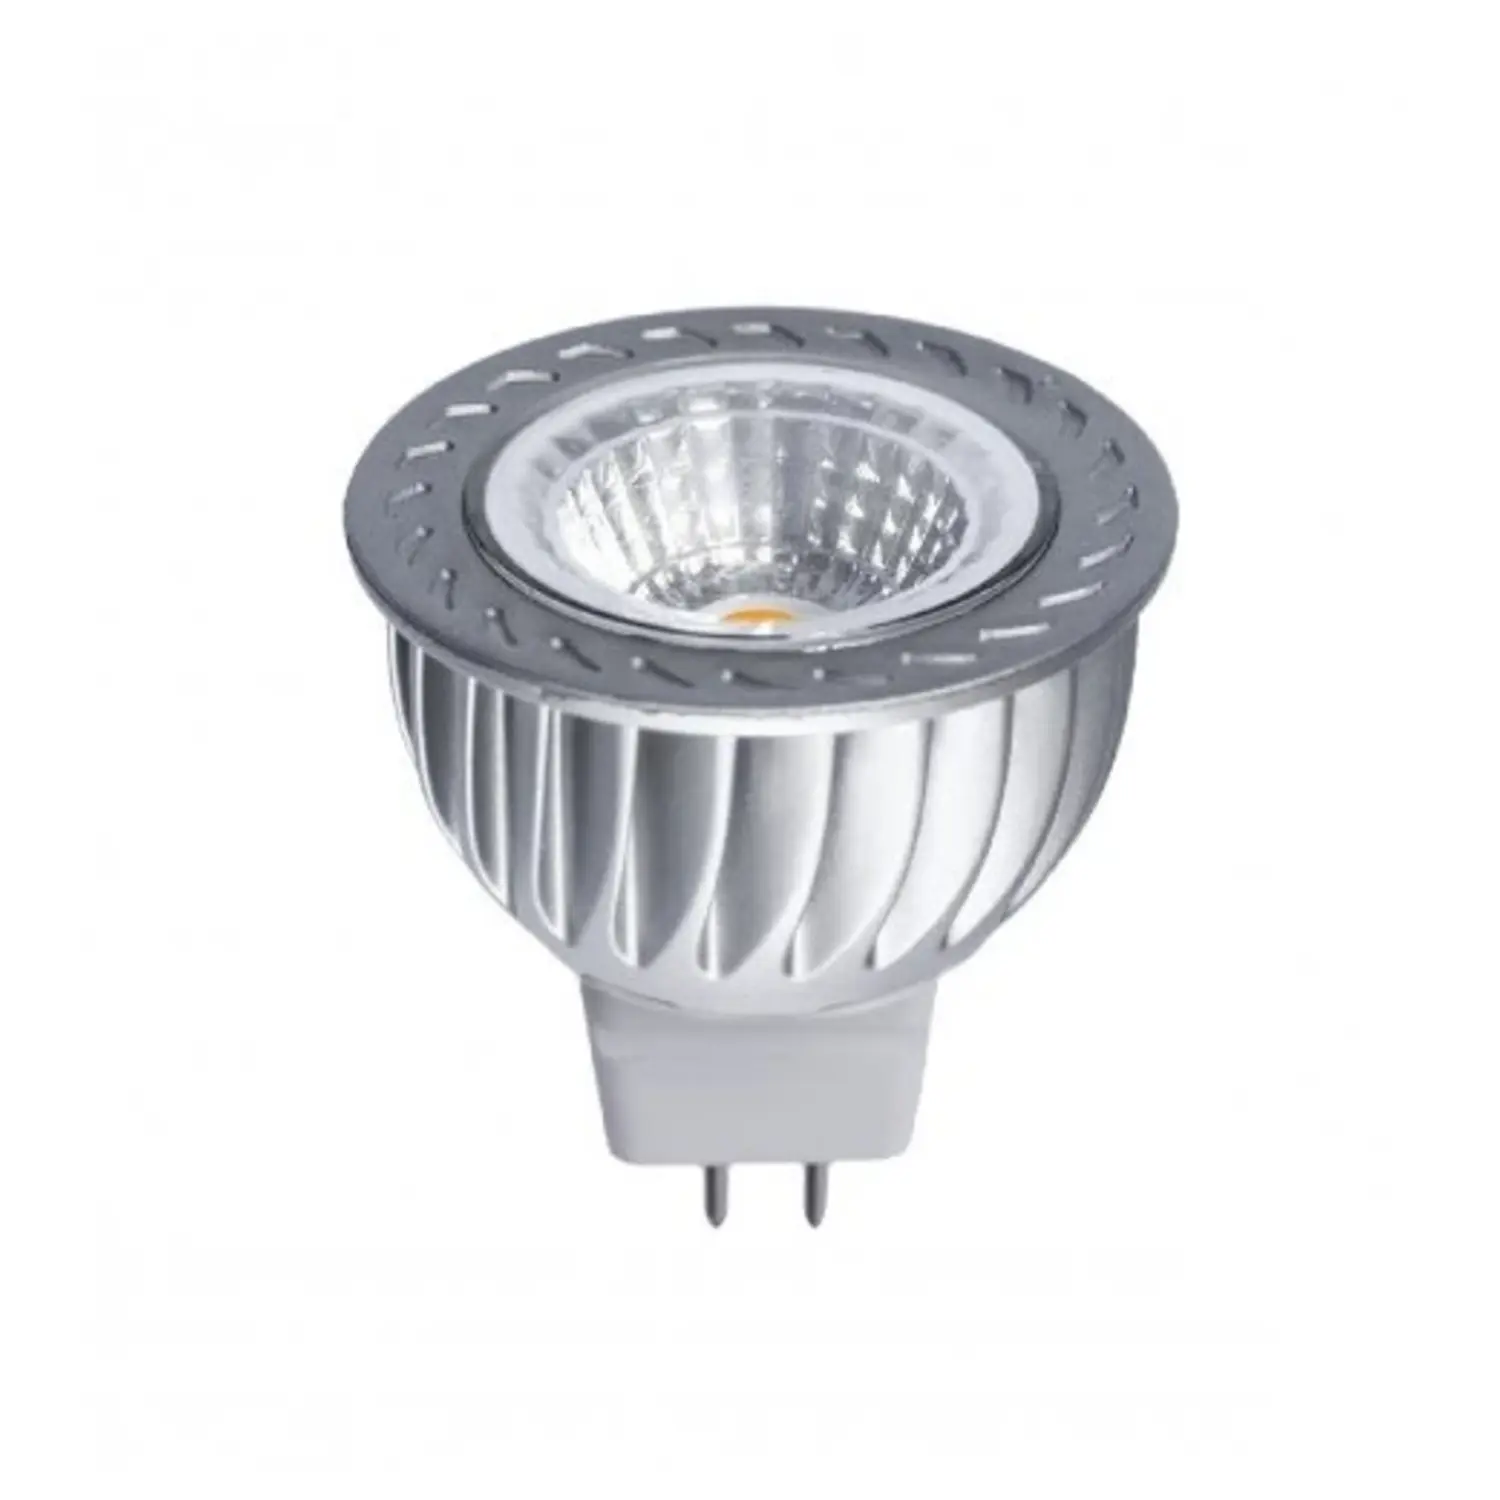 immagine del prodotto lampadina led cob gx5,3 6 watt bianco caldo